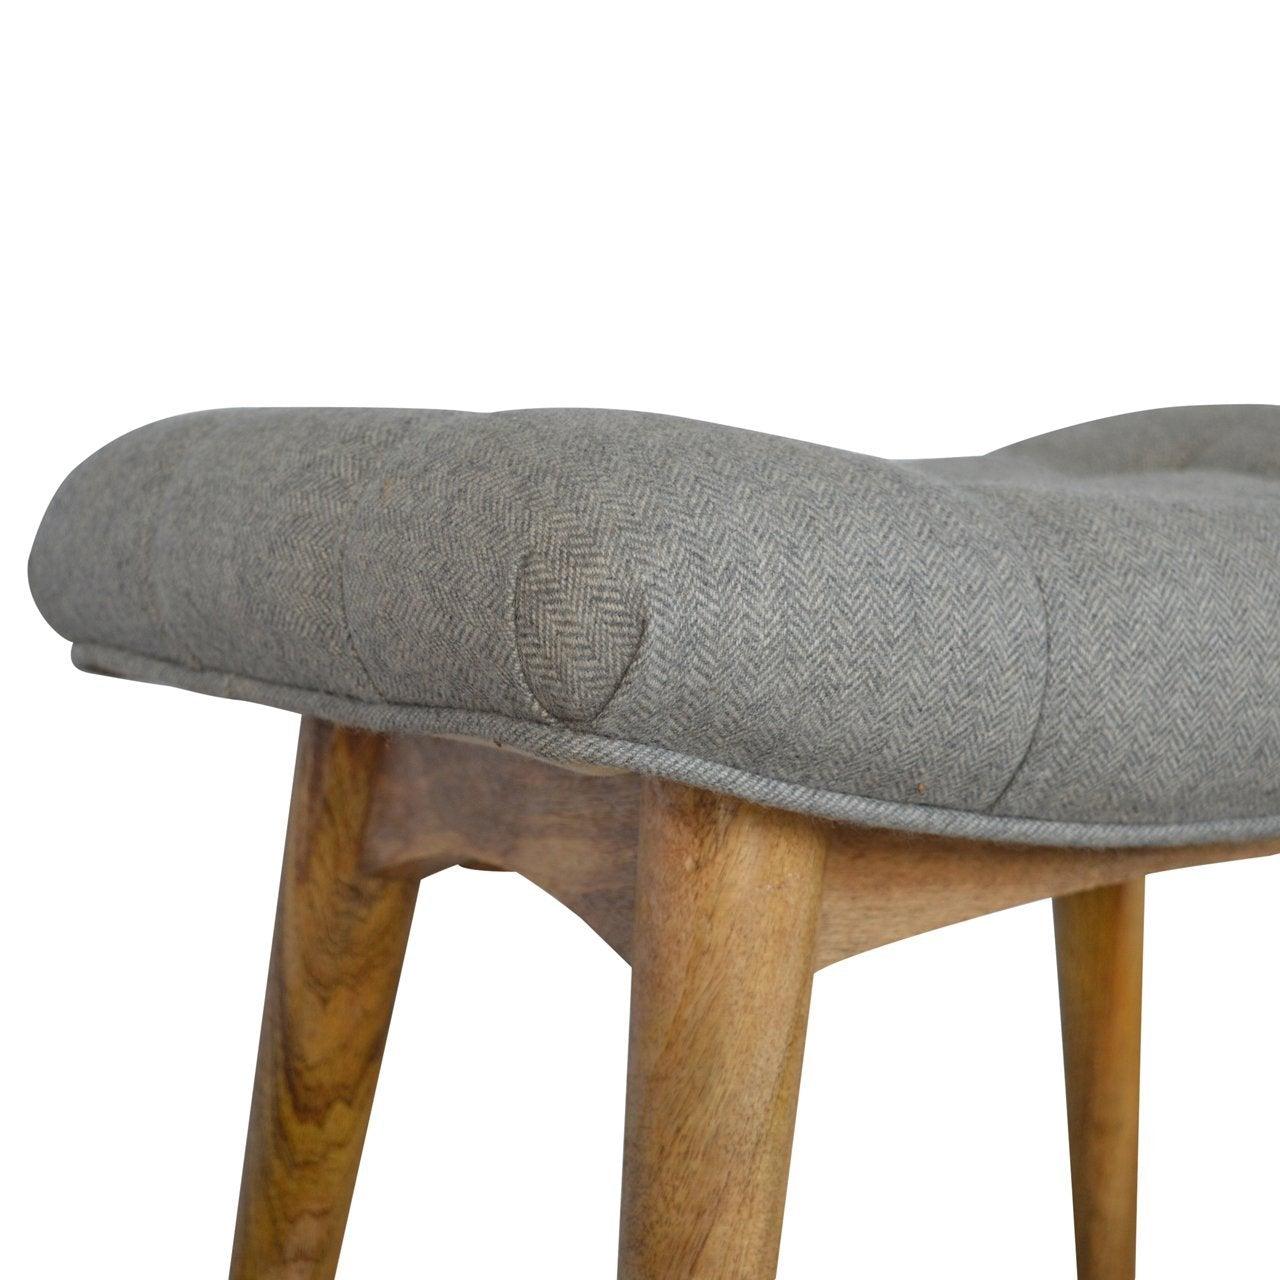 Curved grey tweed bench - crimblefest furniture - image 6